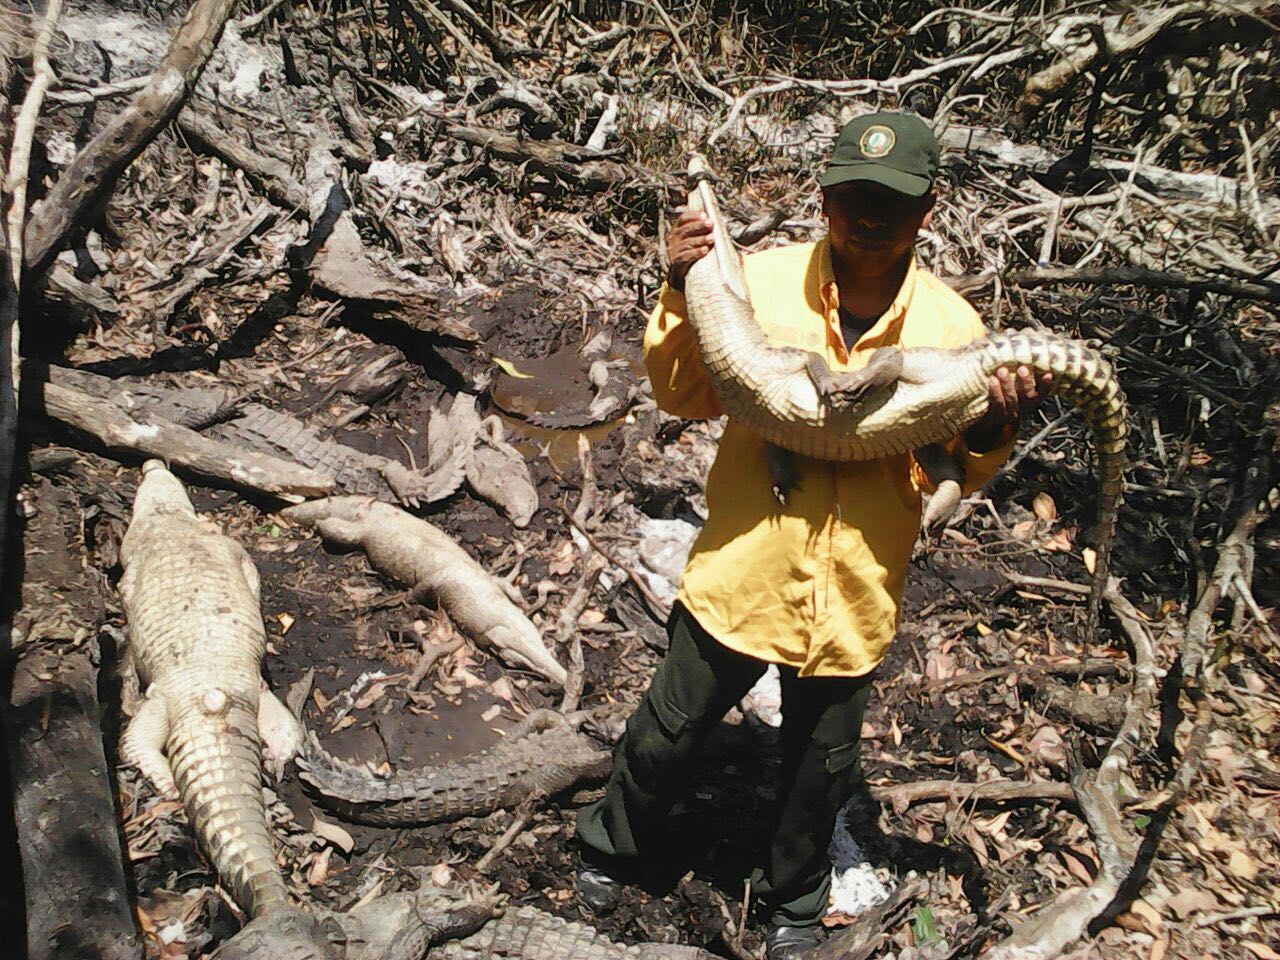 La CONANP y la PROFEPA, en Chiapas, lograron la recuperación de 34 ejemplares de reptiles (cocodrilo y caimán) 